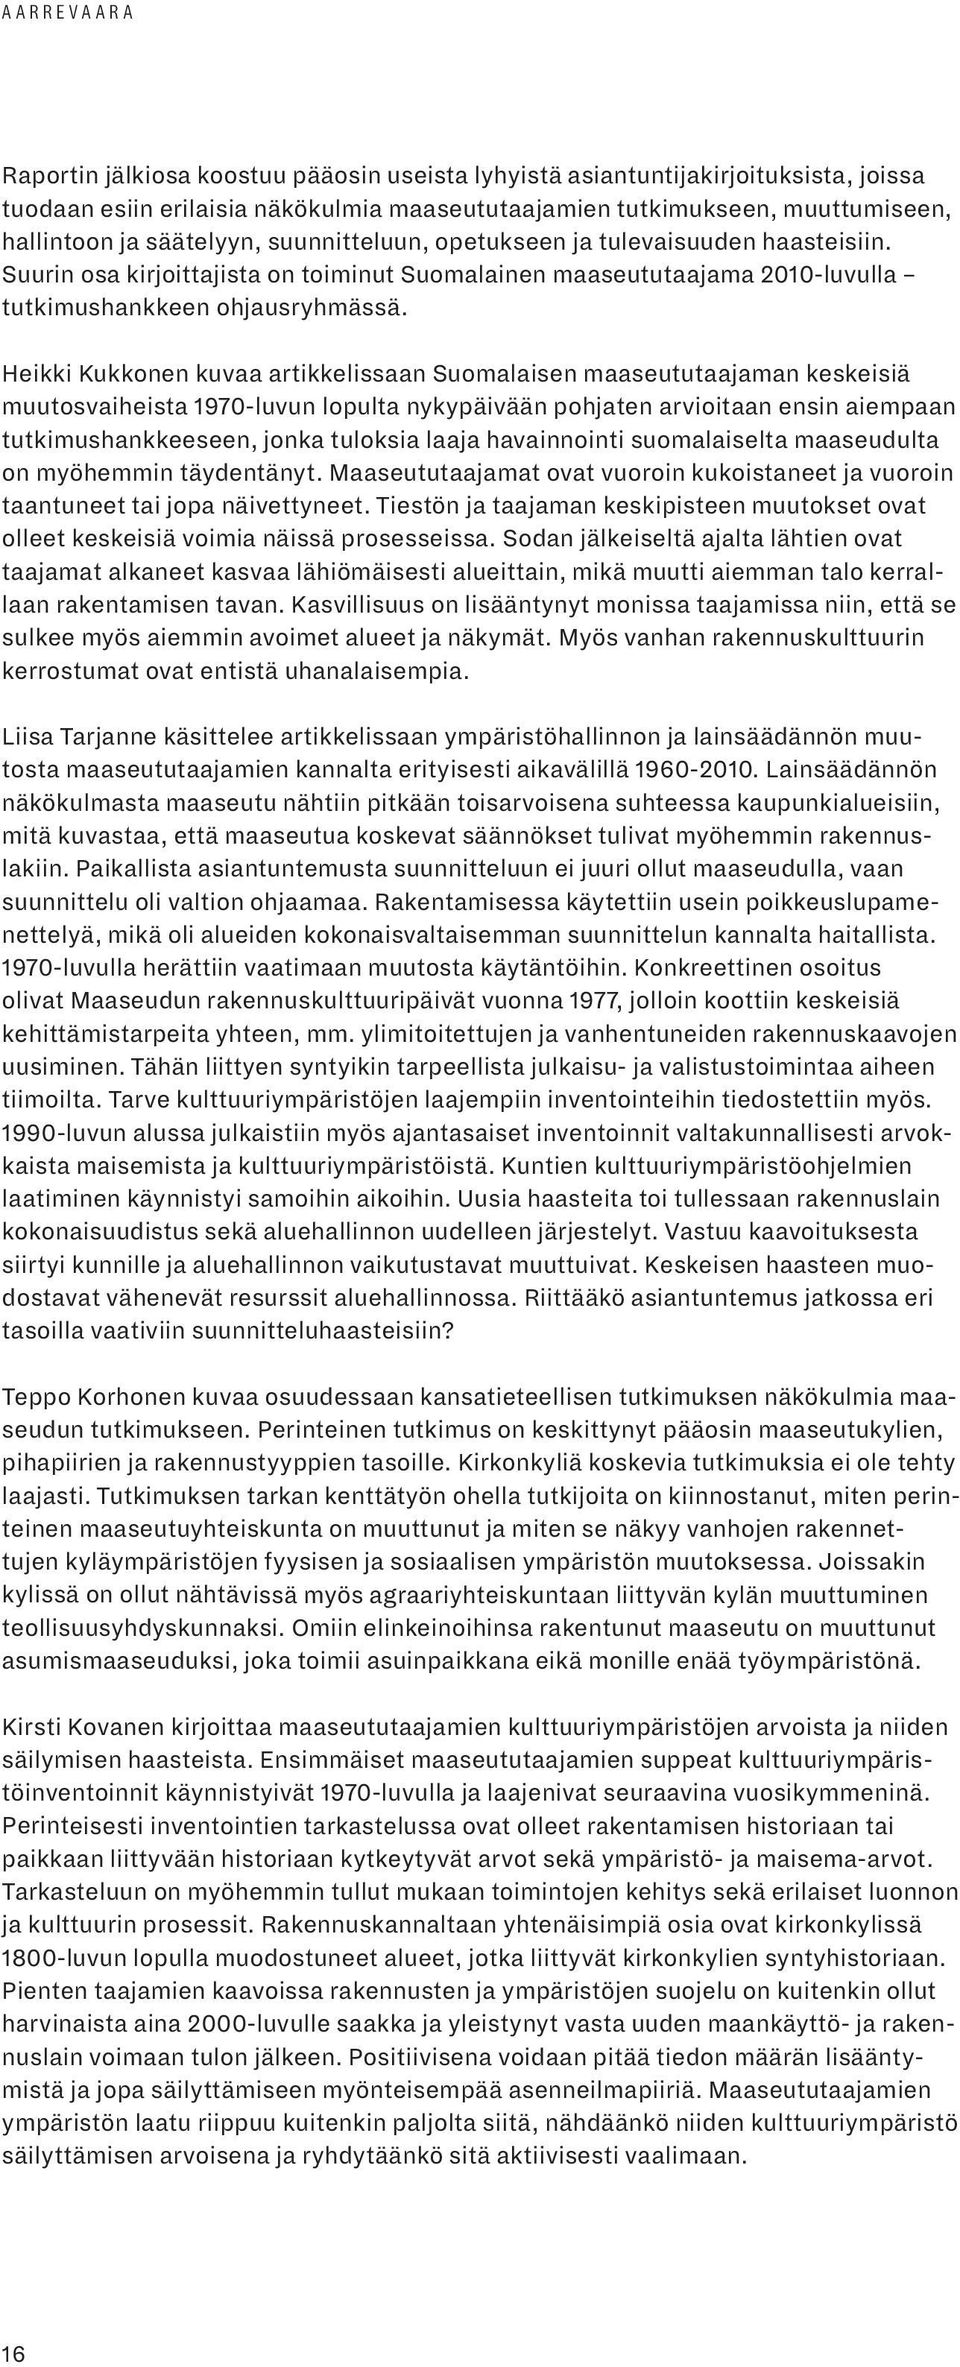 Heikki Kukkonen kuvaa artikkelissaan Suomalaisen maaseututaajaman keskeisiä muutosvaiheista 1970-luvun lopulta nykypäivään pohjaten arvioitaan ensin aiempaan tutkimushankkeeseen, jonka tuloksia laaja